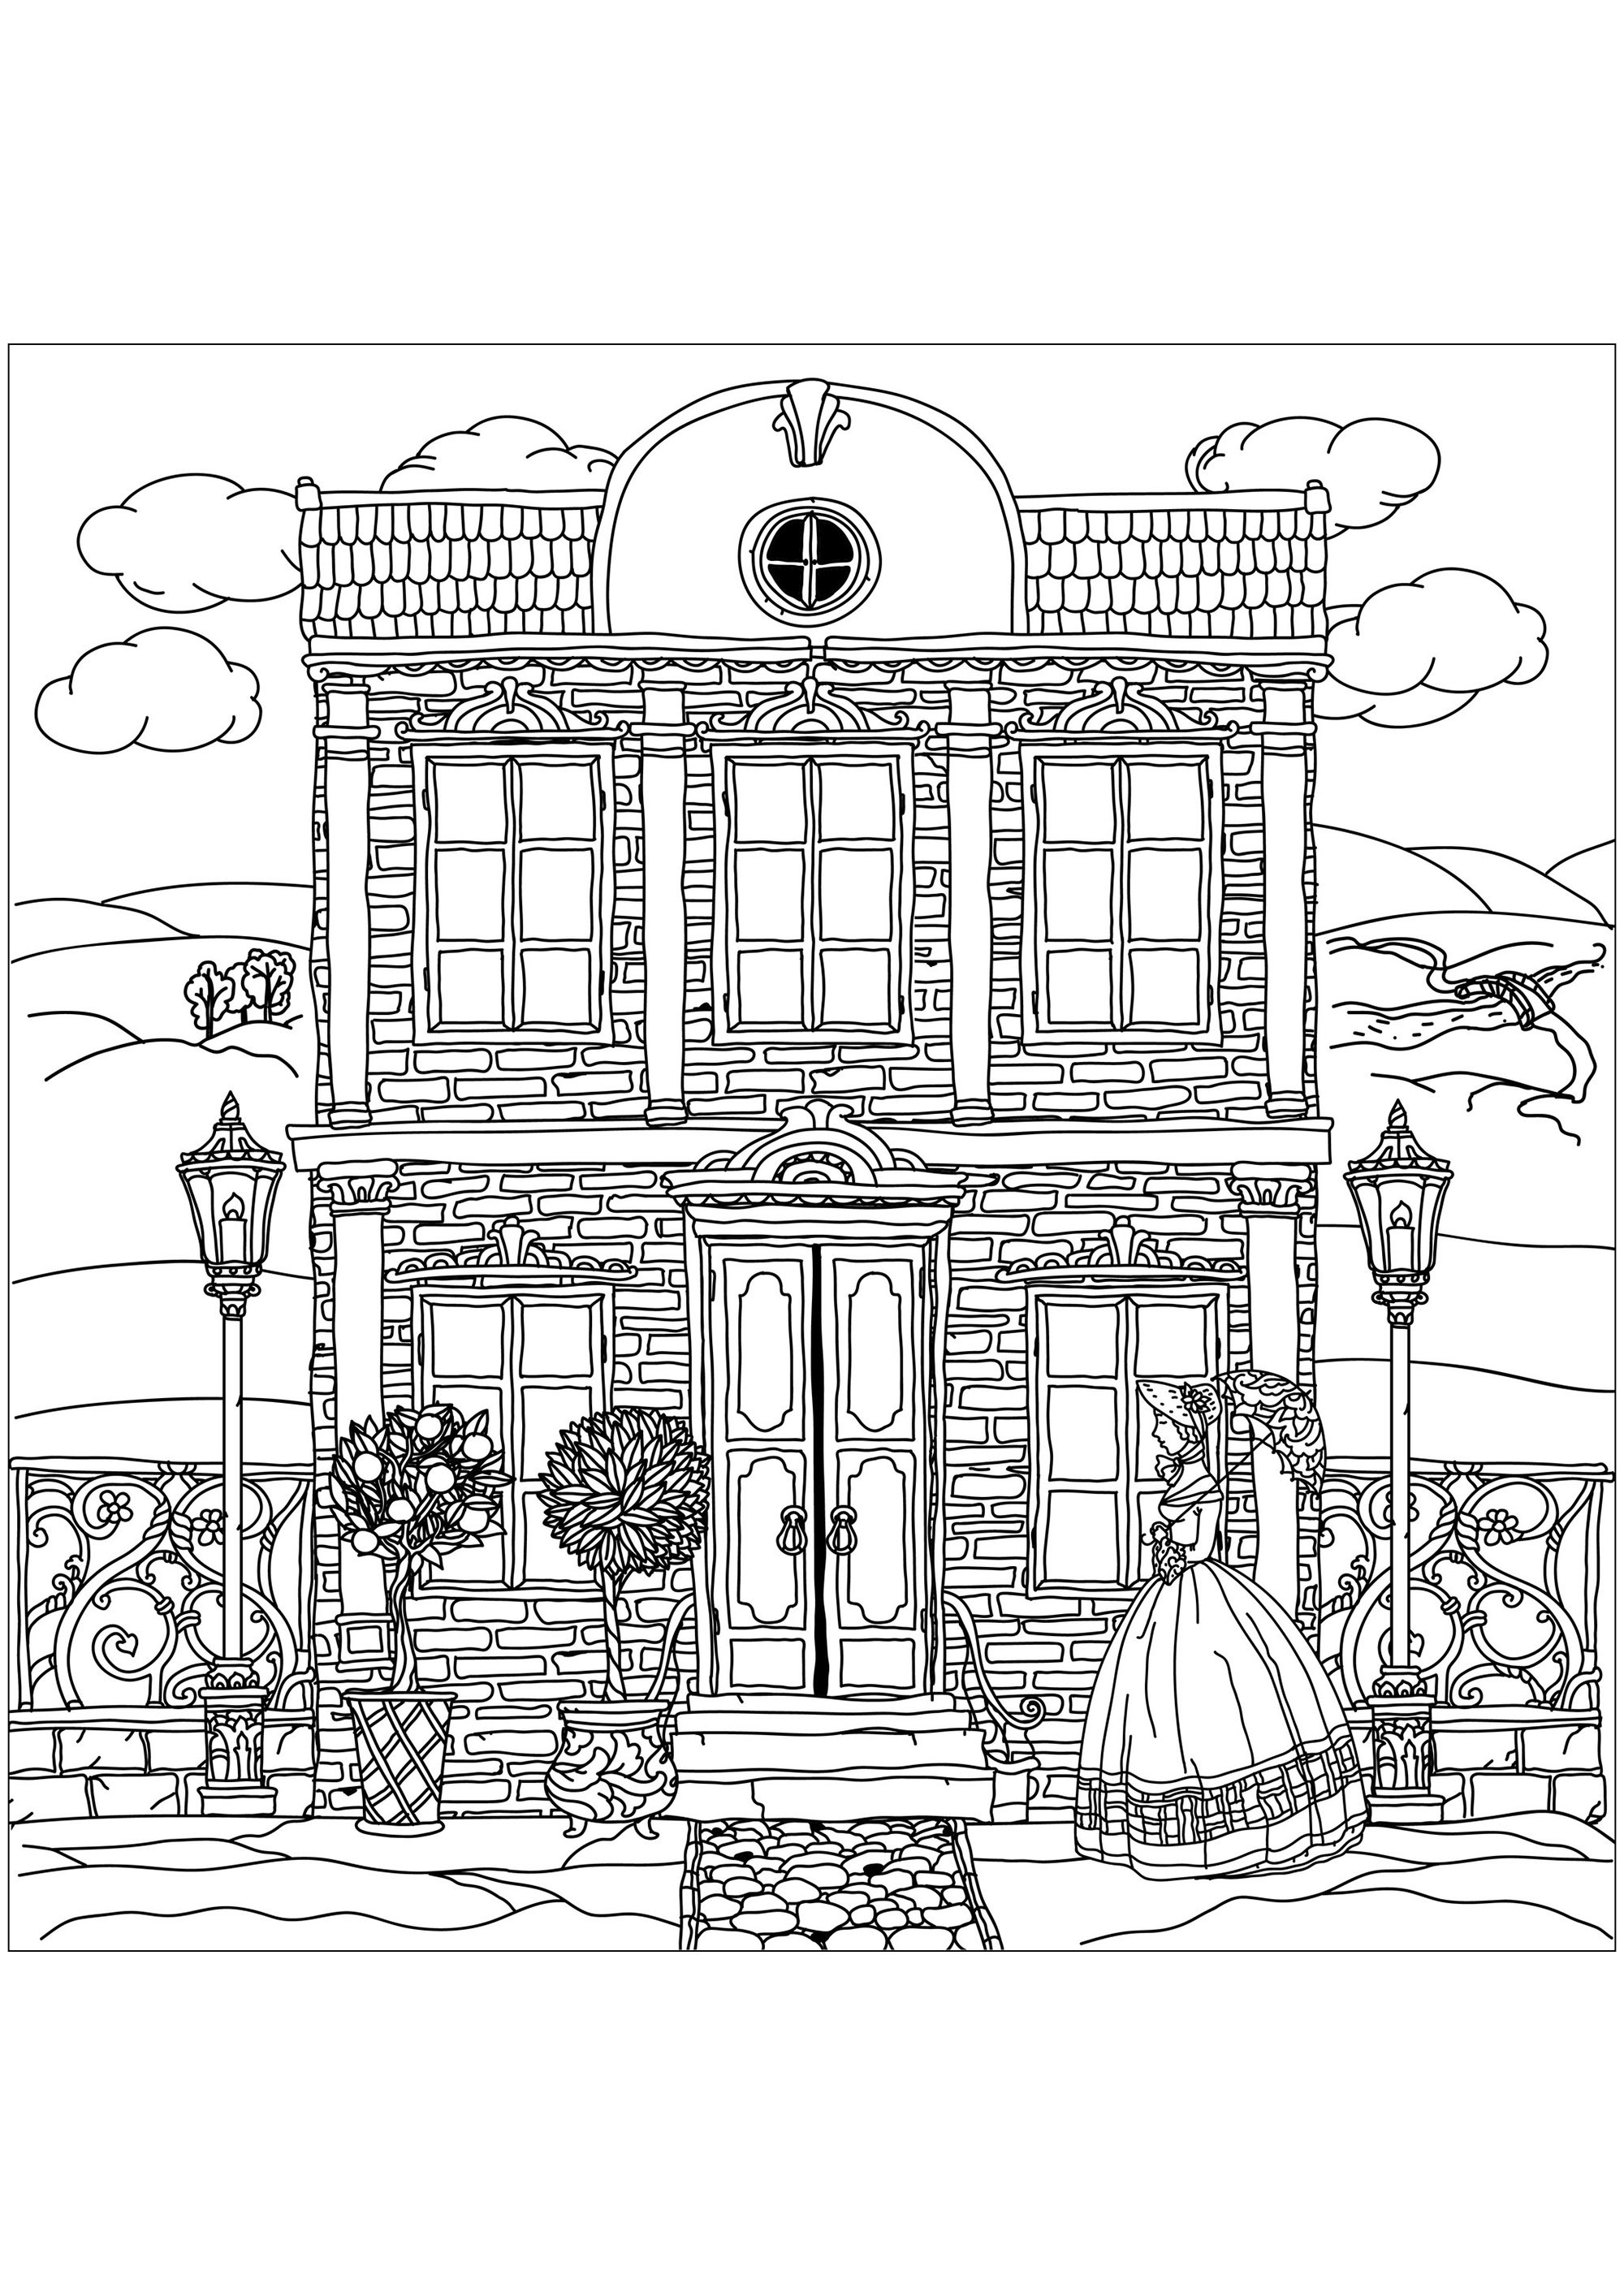 Casa victoriana y joven vestida con la elegancia de la época¡Viaja al pasado con esta preciosa página para colorear!, Origen : 123rf   Artista : Mashabr